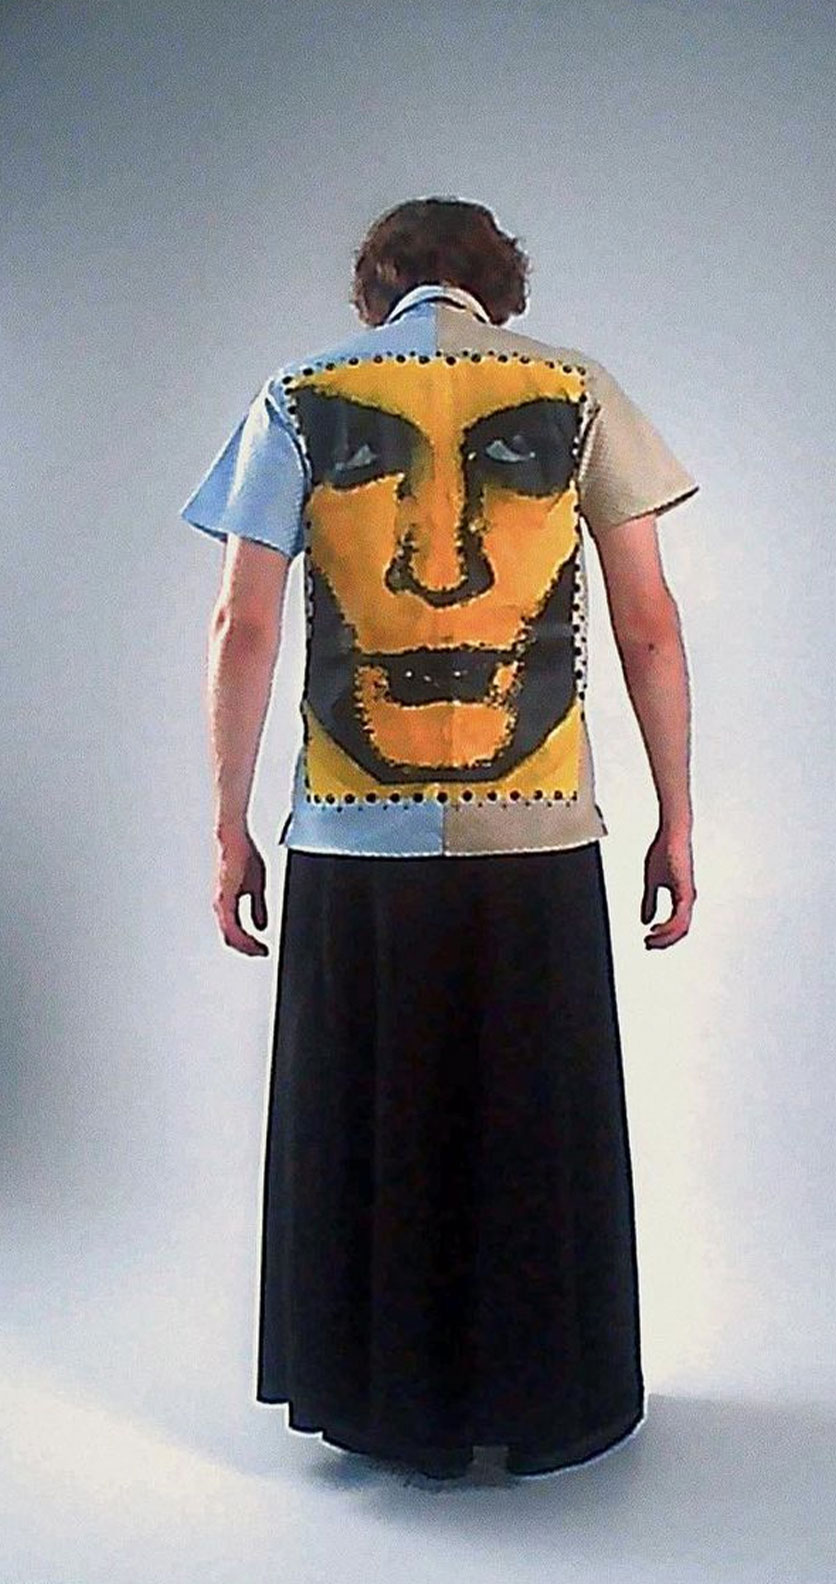 На фотографии изображен парень в длинной юбке и футболке с принтом. На футболке изображено лицо человека. Он стоит перед белой стеной.